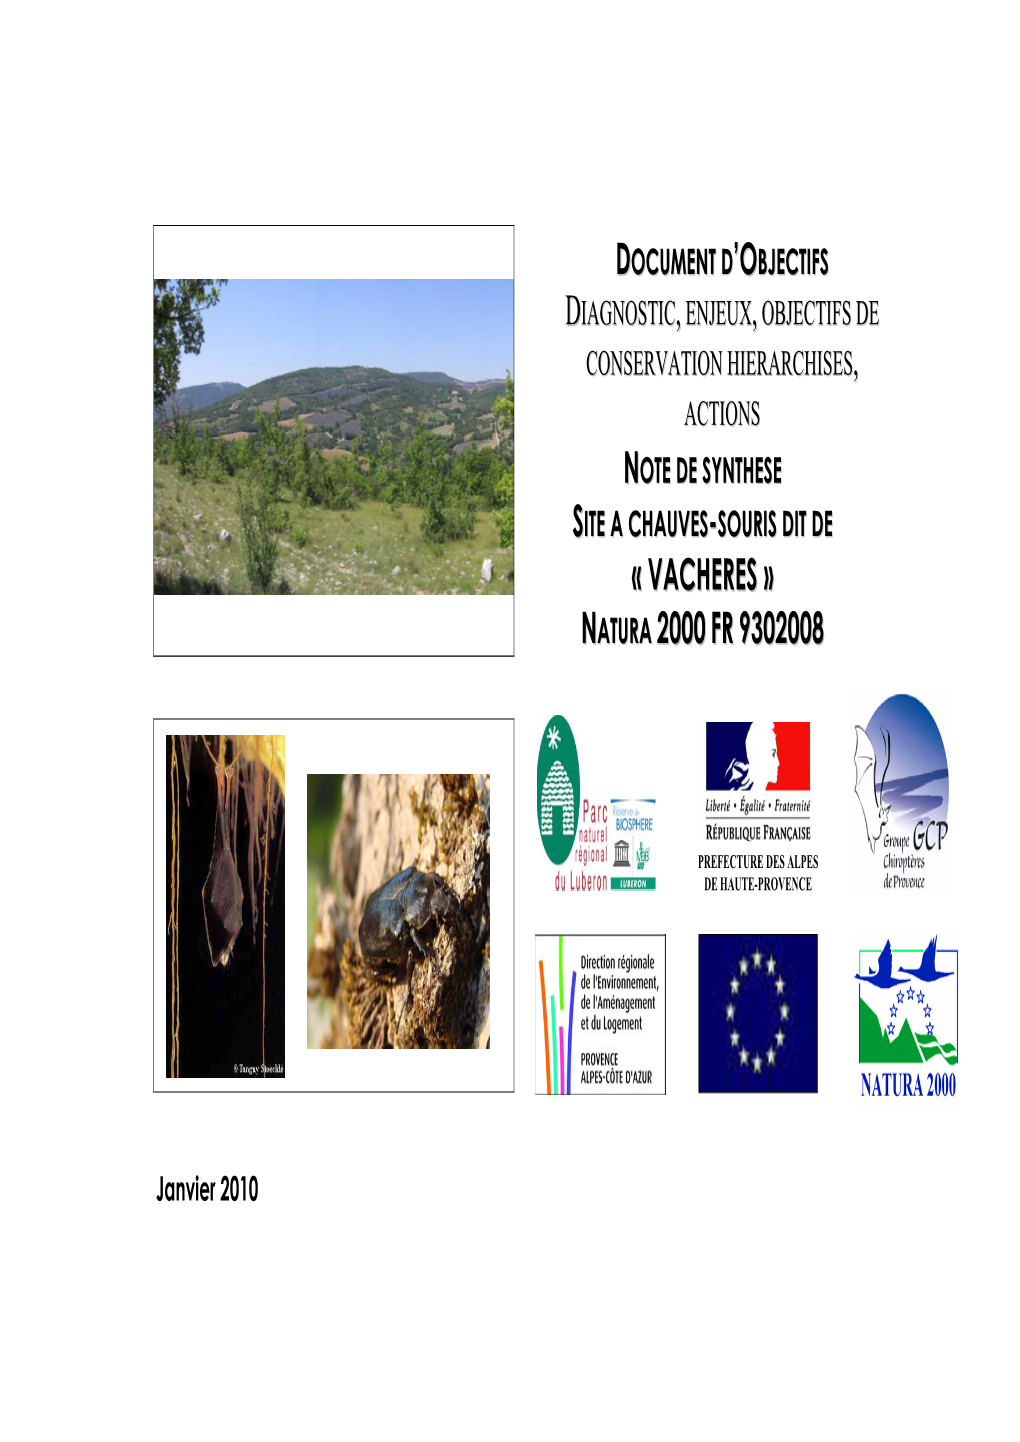 Note De Synthese Site a Chauves-Souris Dit De « Vacheres » Natura 2000 Fr 9302008